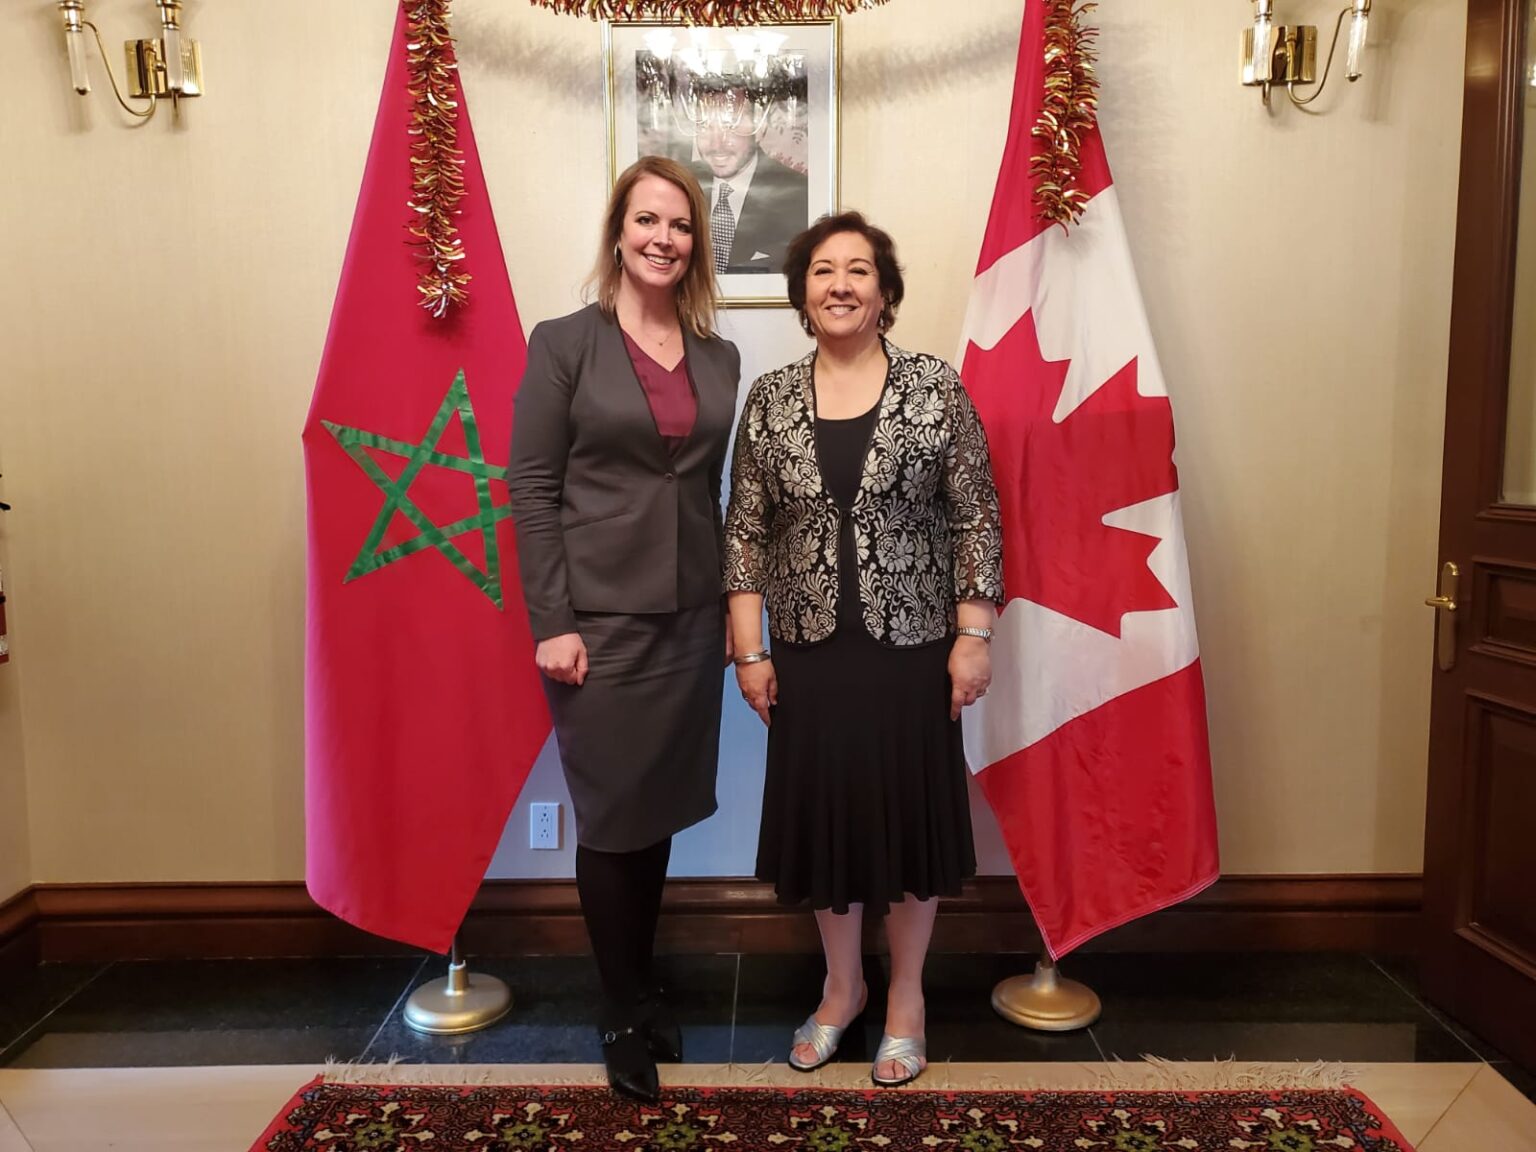 Ottawa: L'ex-ambassadeur du Canada au Maroc décorée du Grand Cordon du Wissam Alaouite